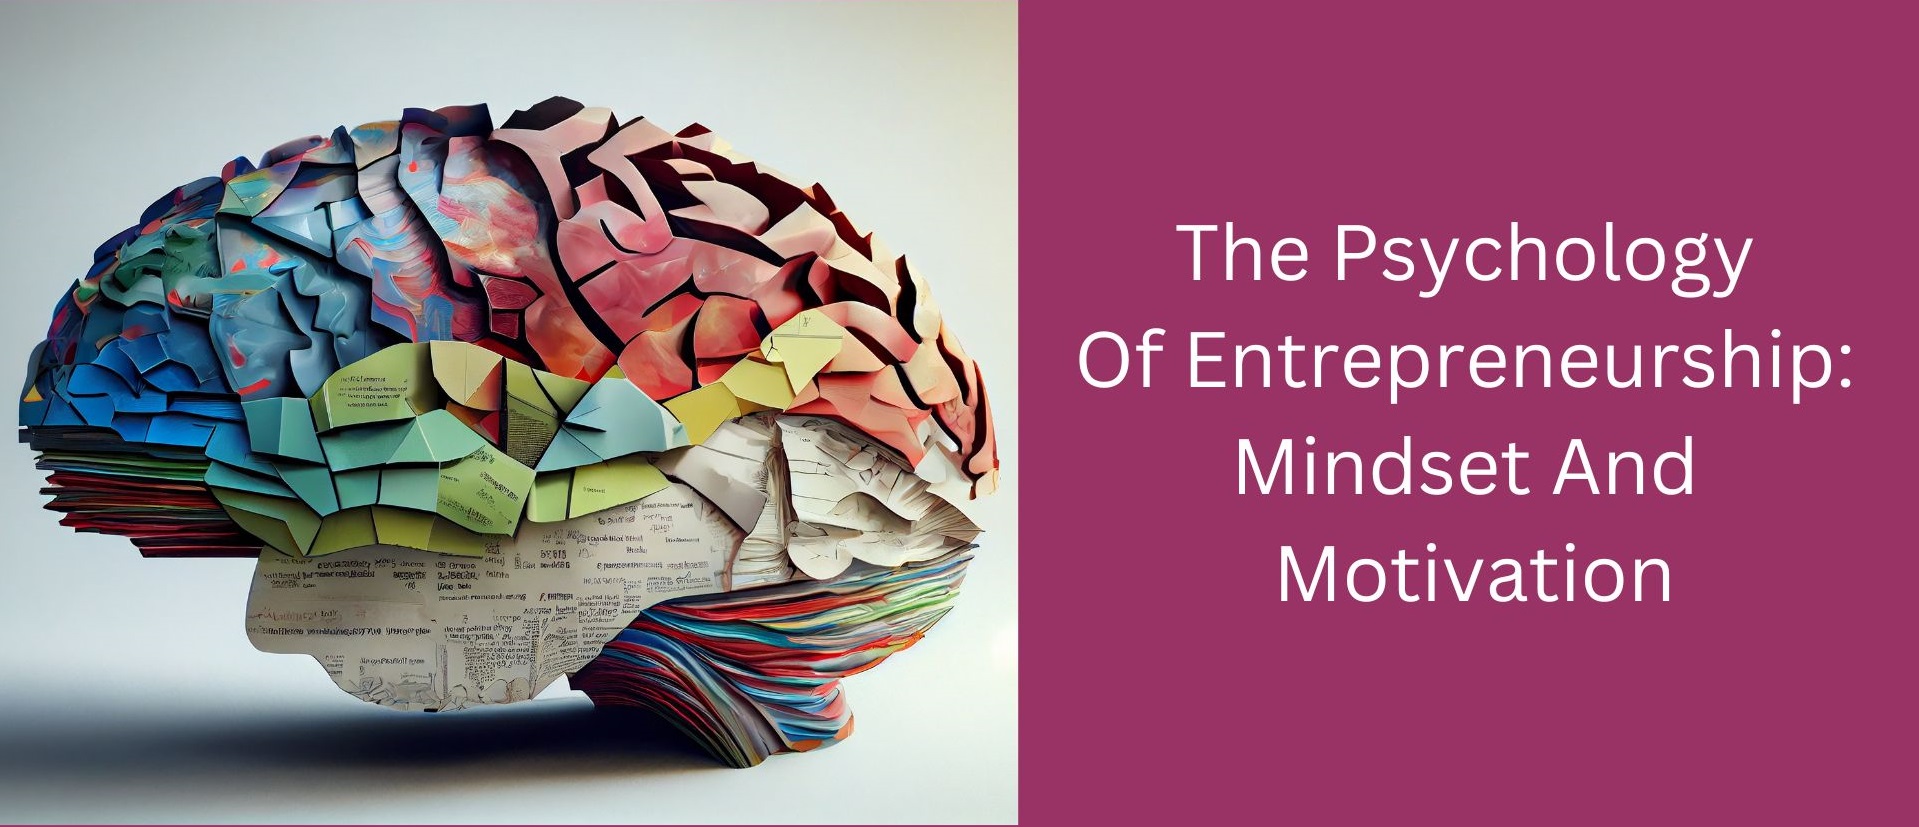 The Psychology Of Entrepreneurship: Mindset And Motivation